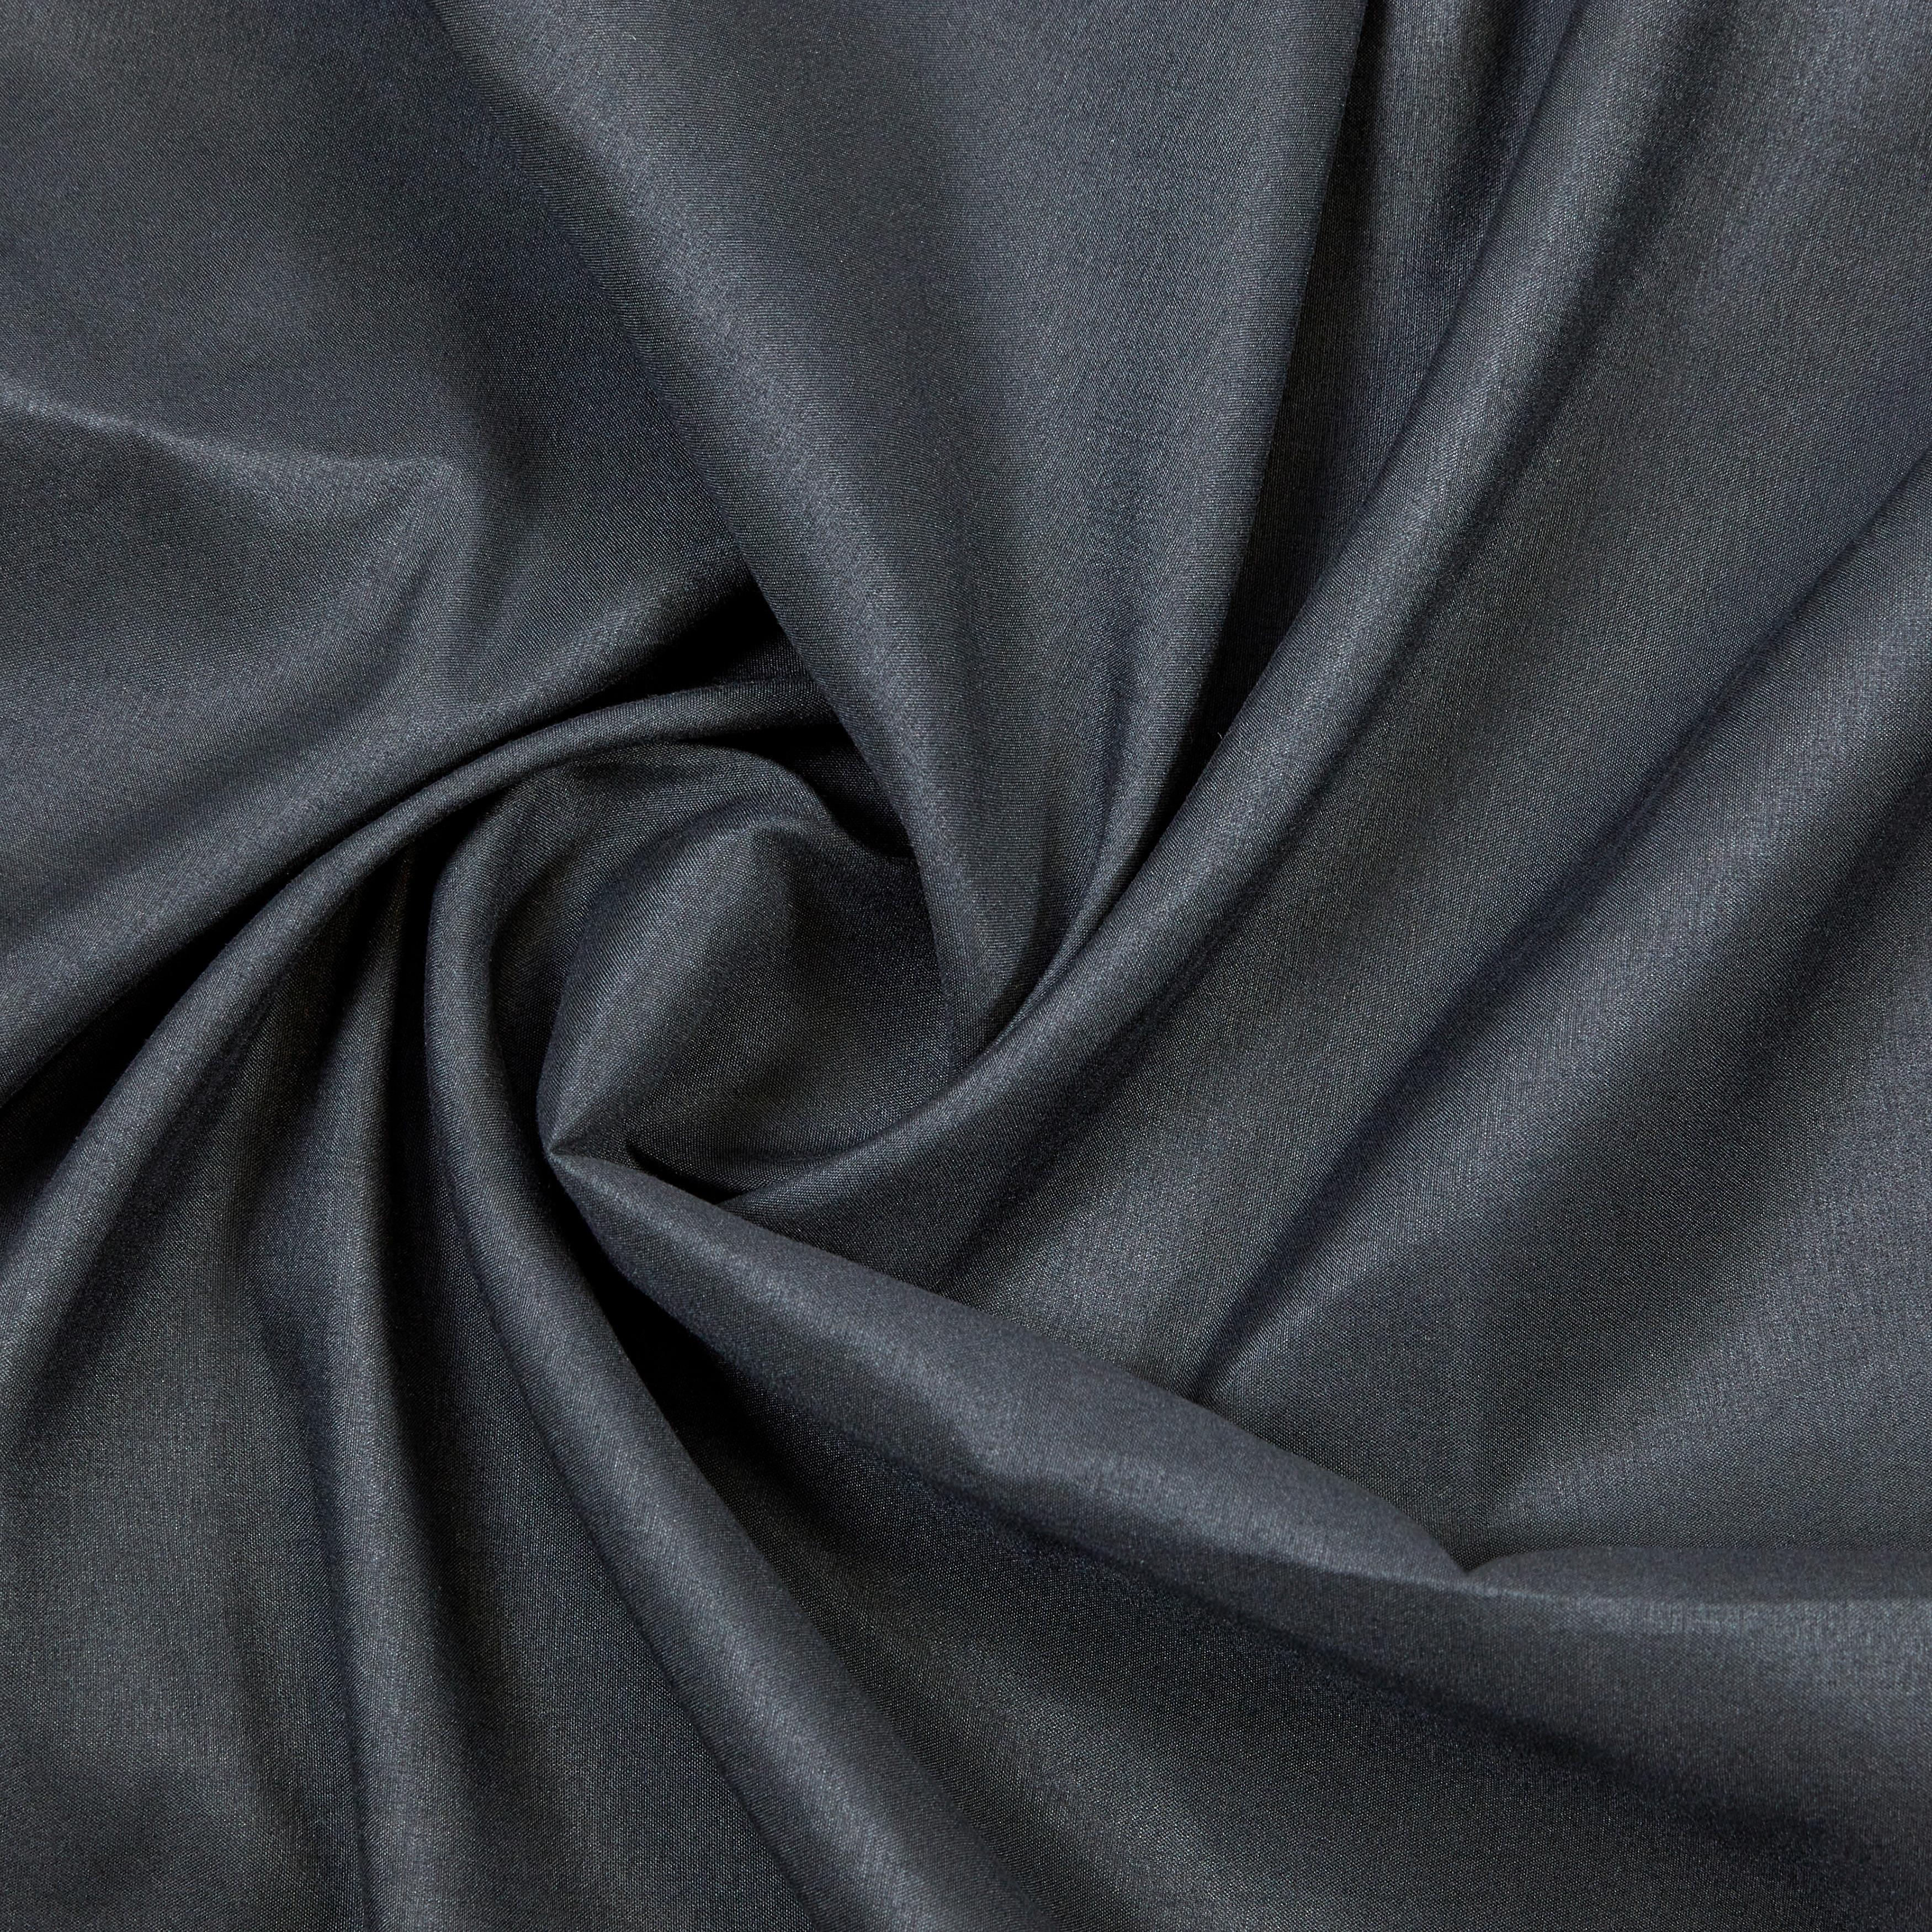 Záves S Krúžkami Abby, 140/235 Cm - čierna, Konvenčný, textil (140/235cm) - Modern Living